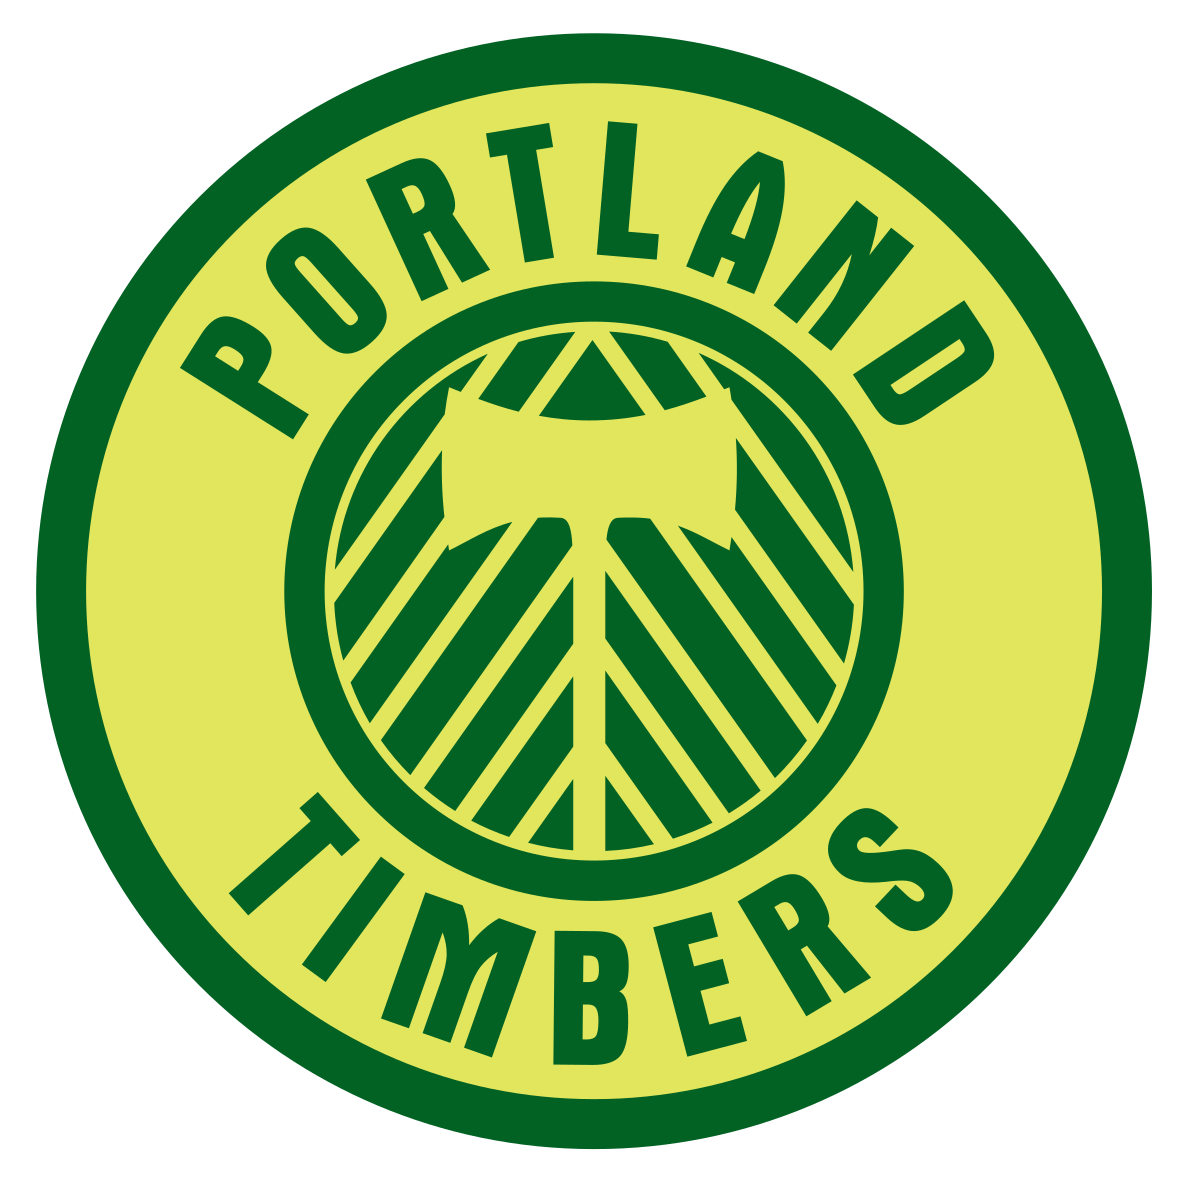 File:Portland Timbers (MLS) l